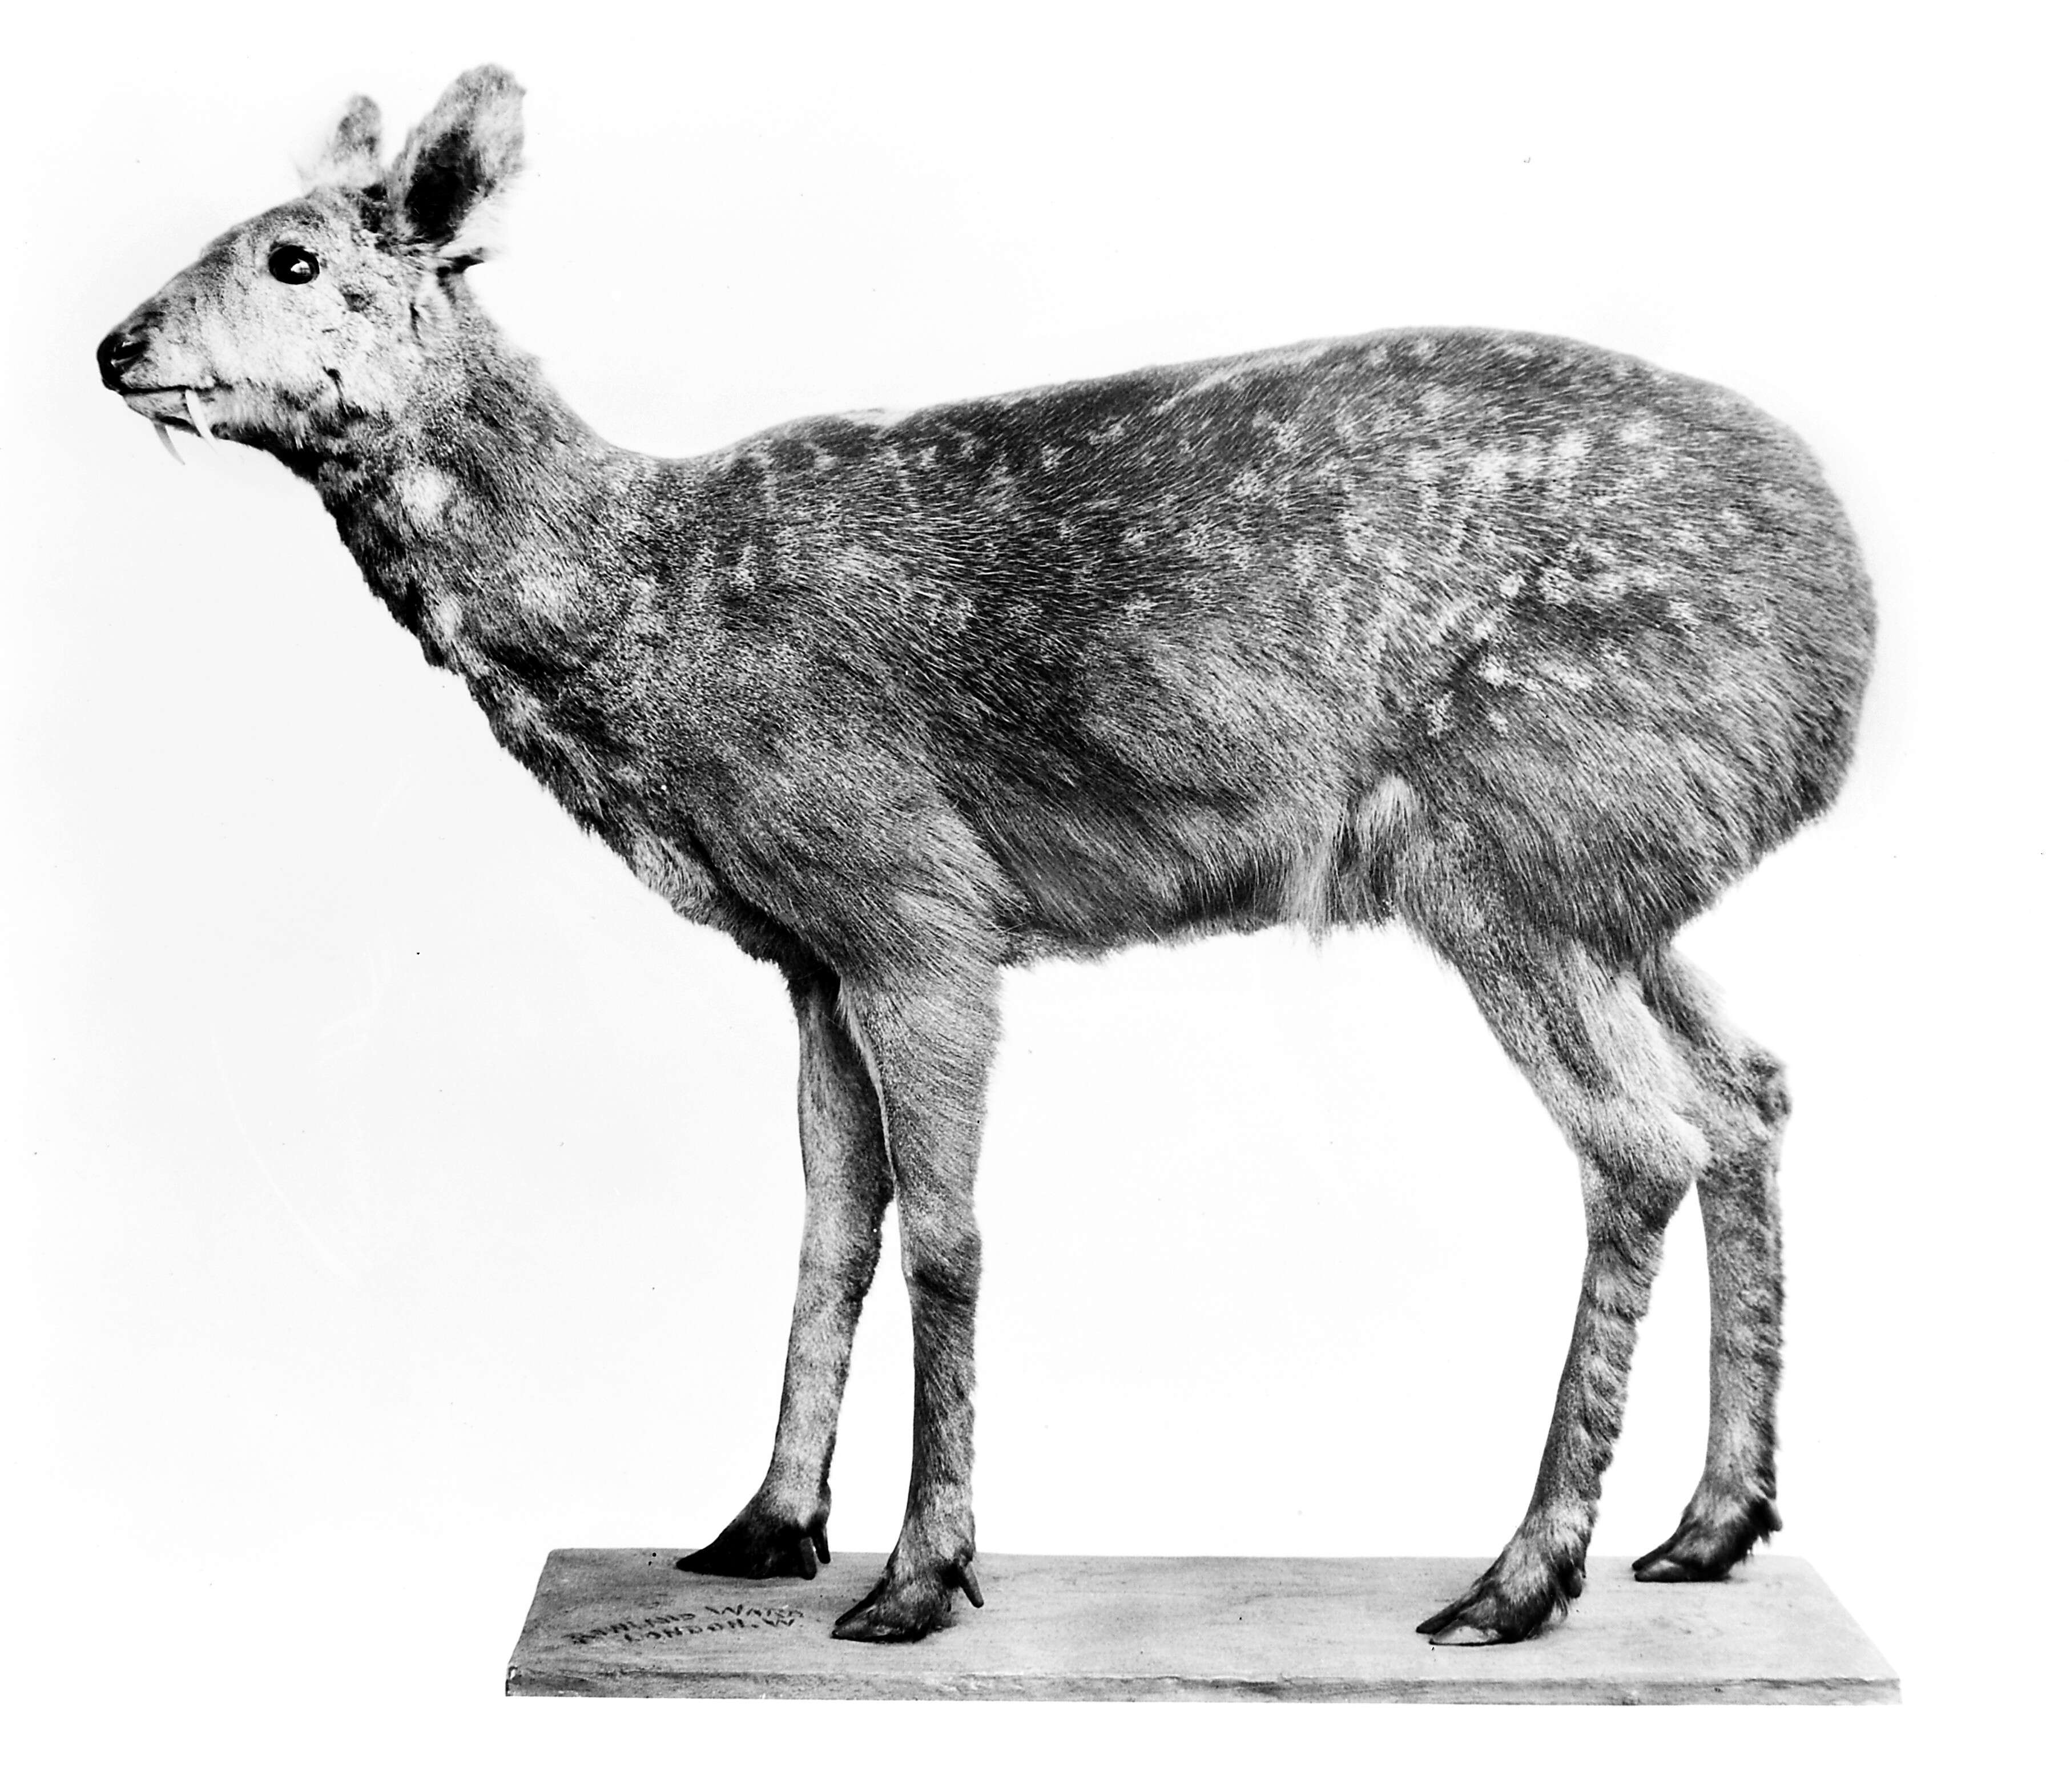 Image of Musk deer